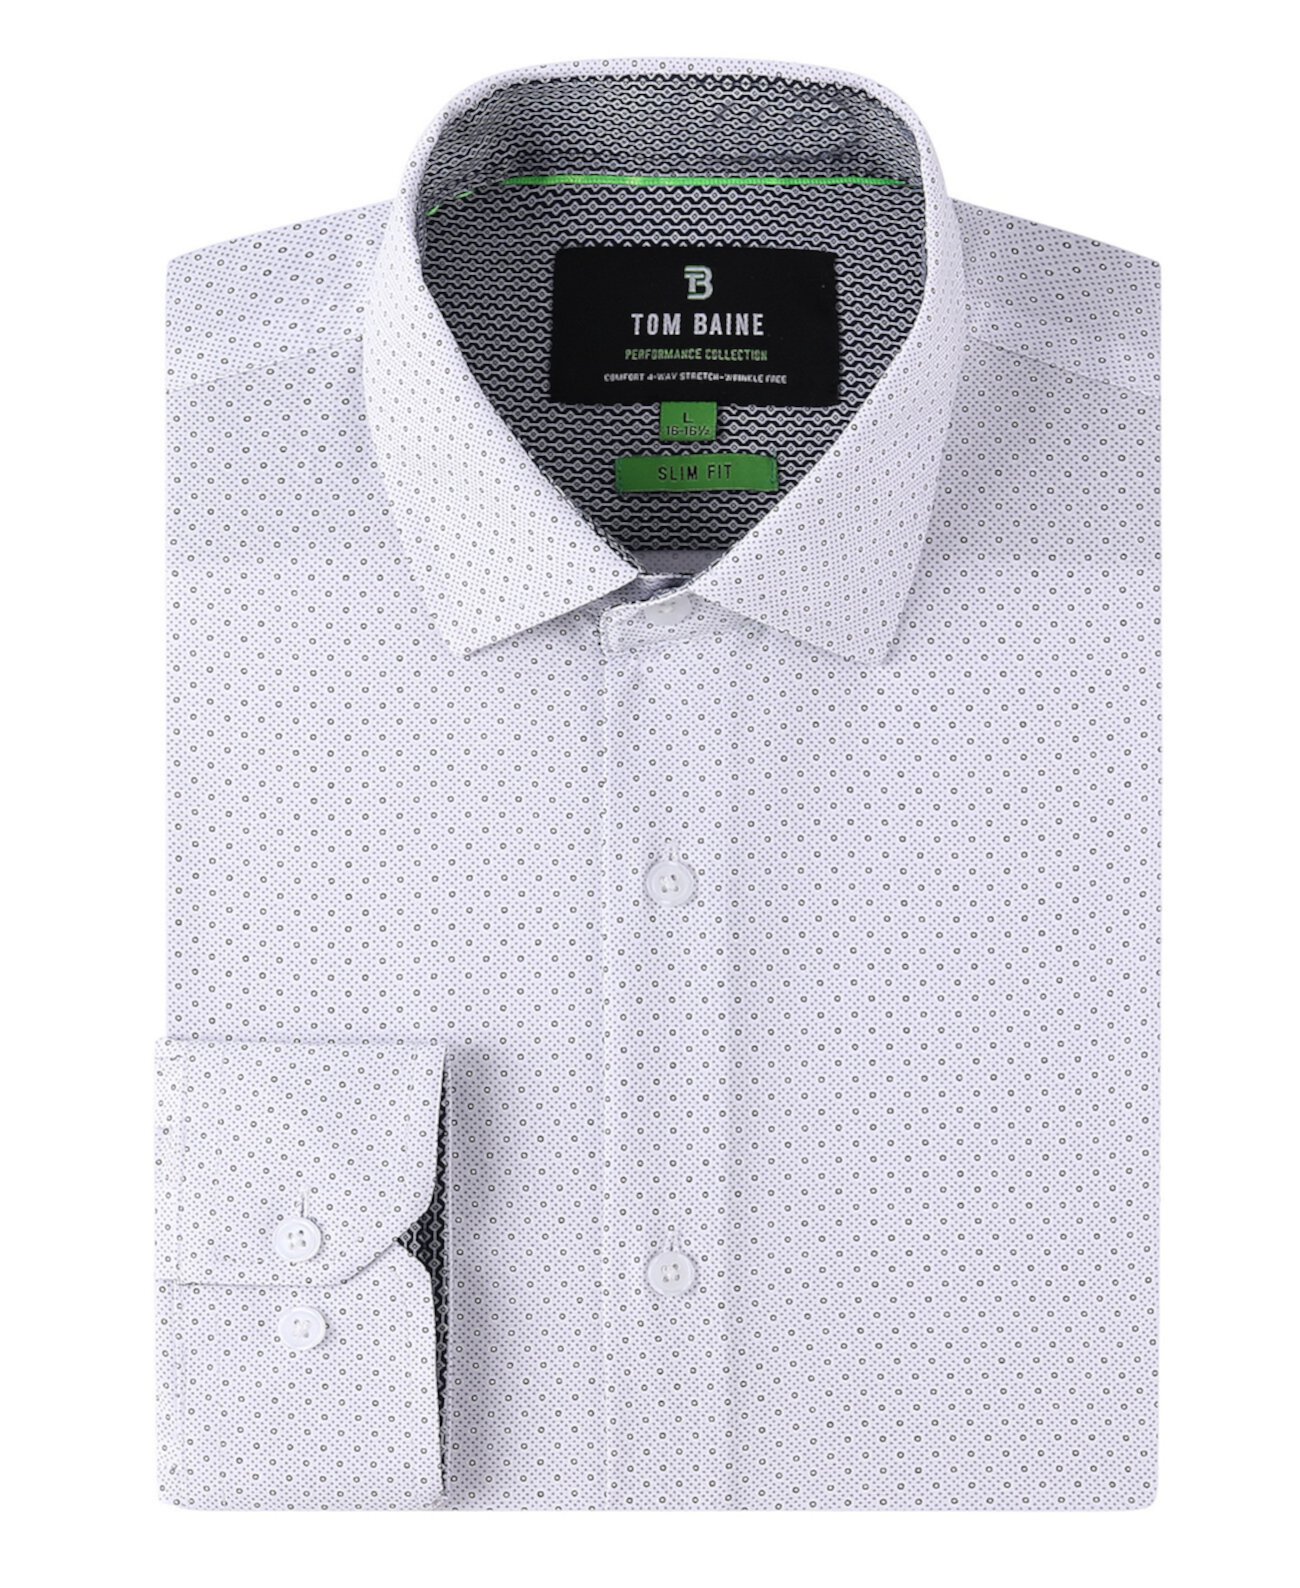 Мужская эластичная классическая рубашка на пуговицах с геометрическим рисунком Tom Baine